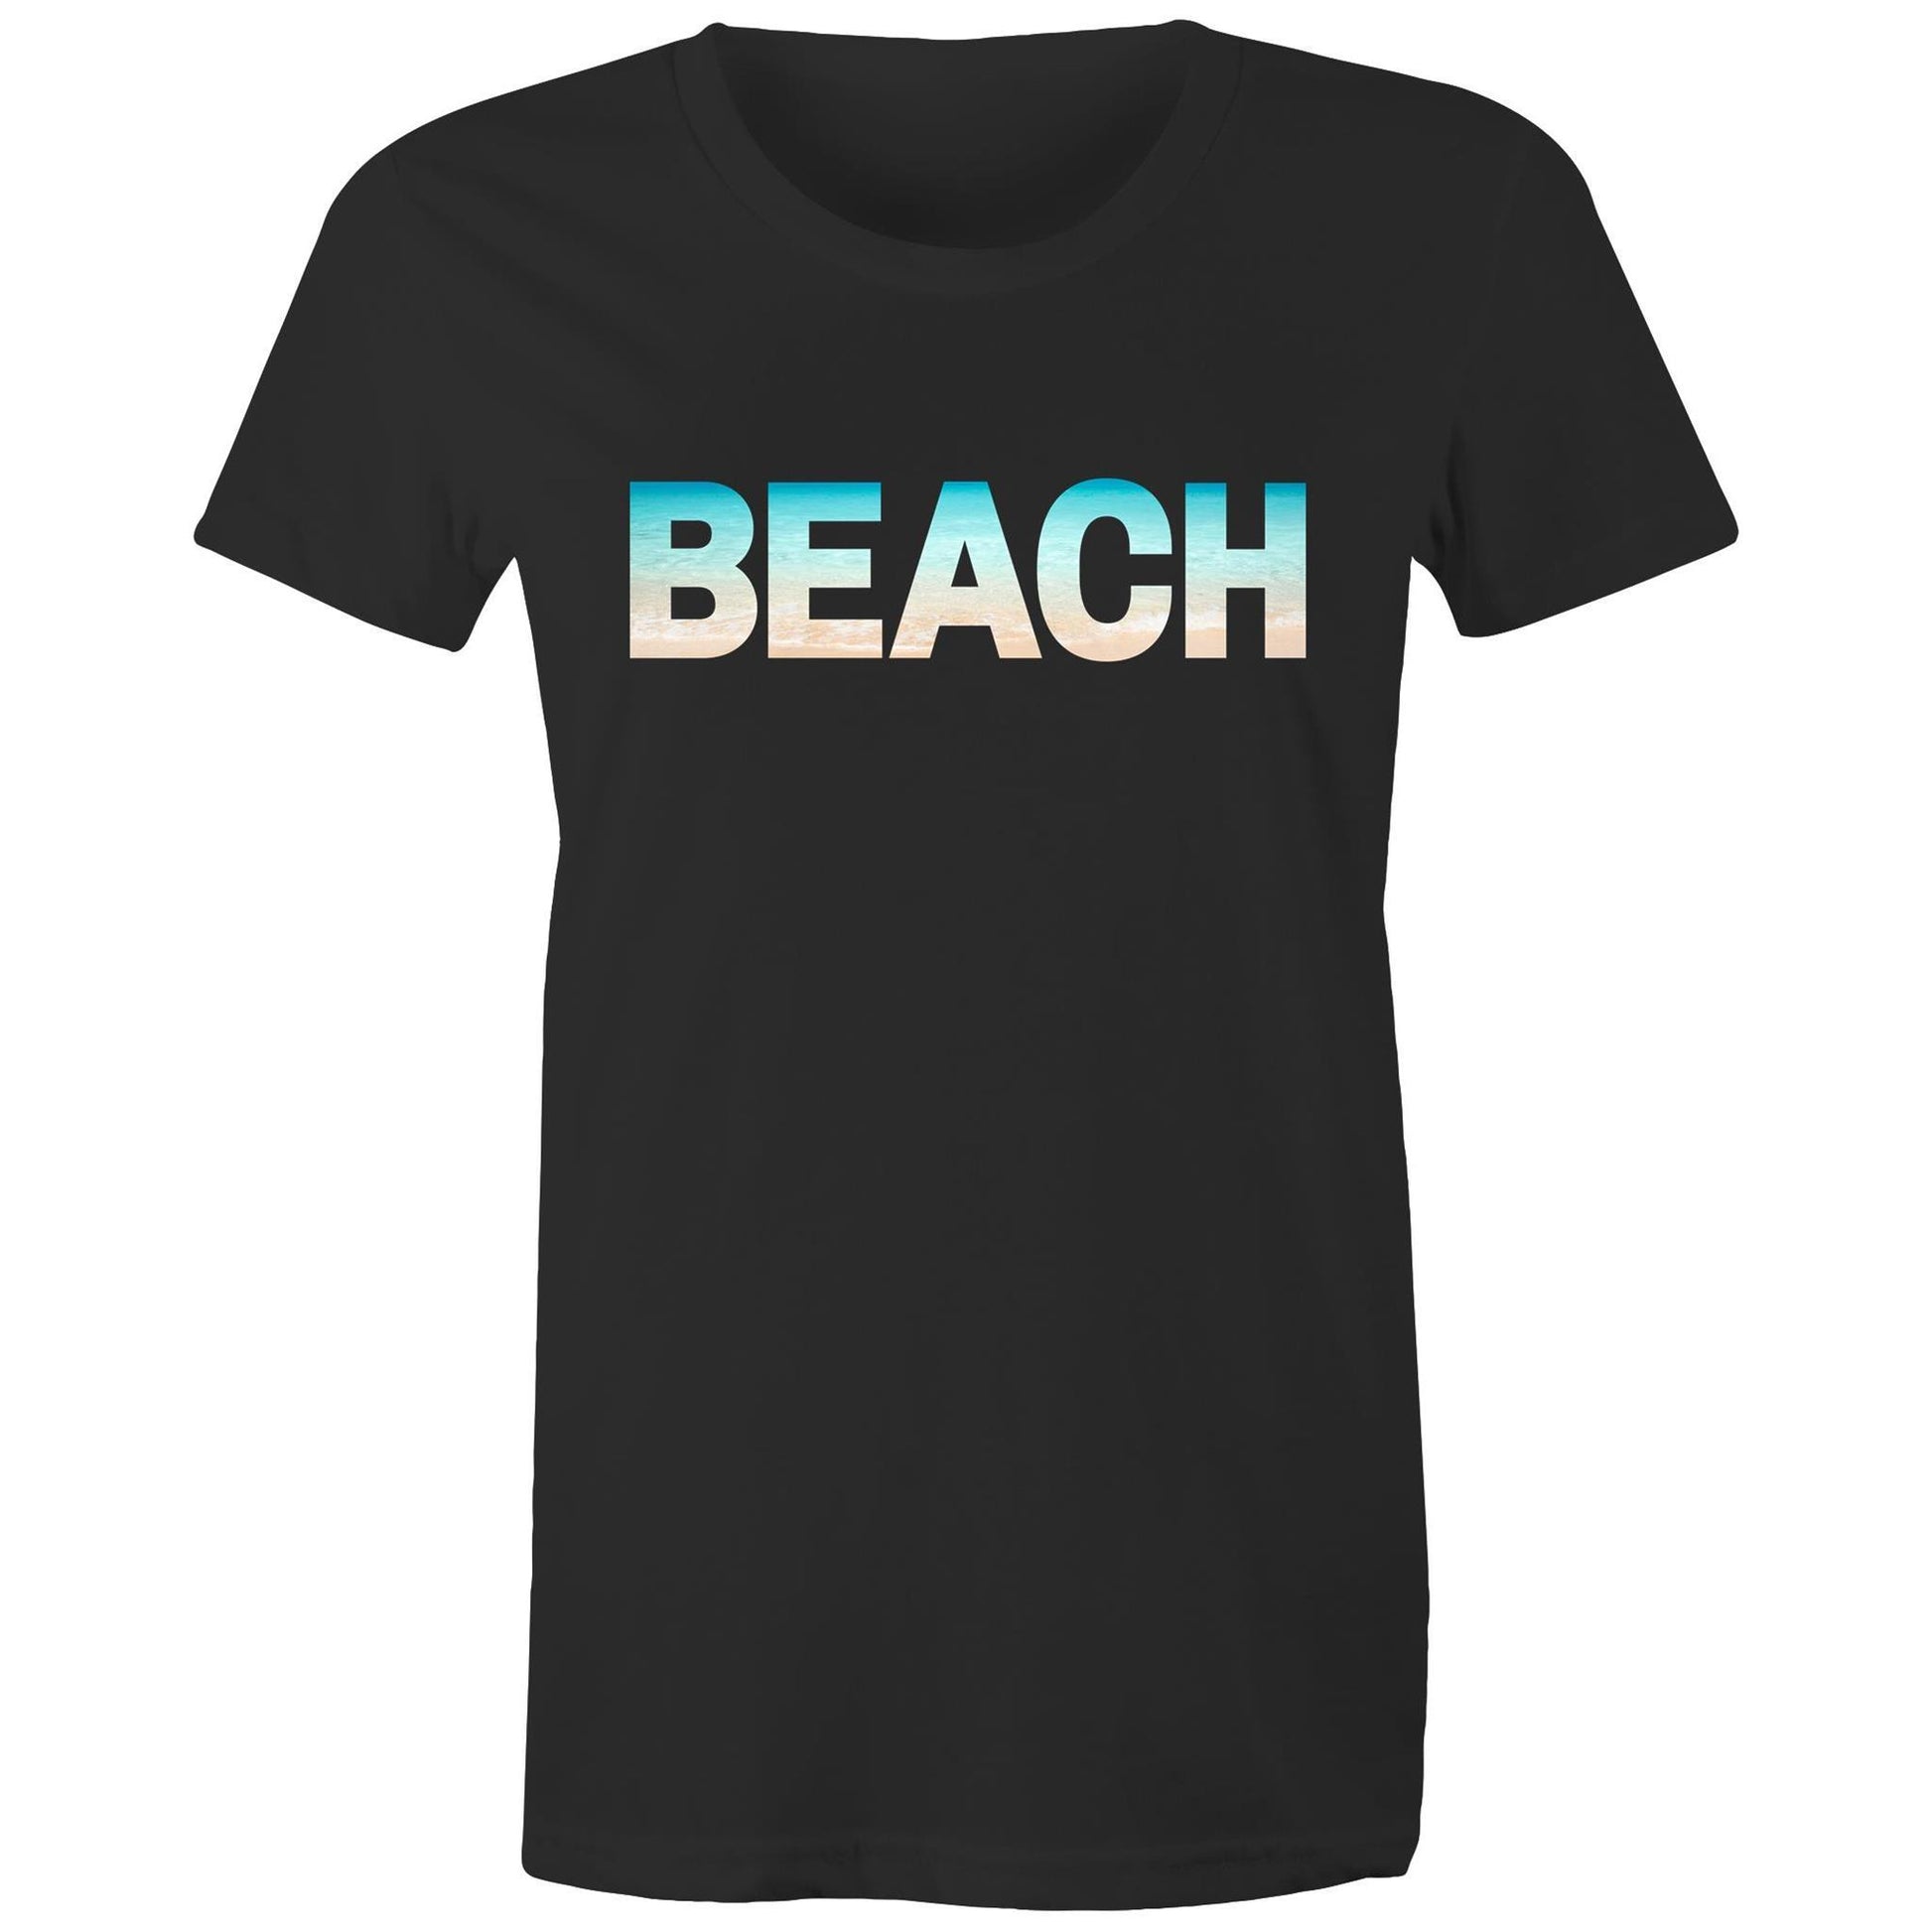 Beach - Women's T-shirt Black Womens T-shirt Summer Womens